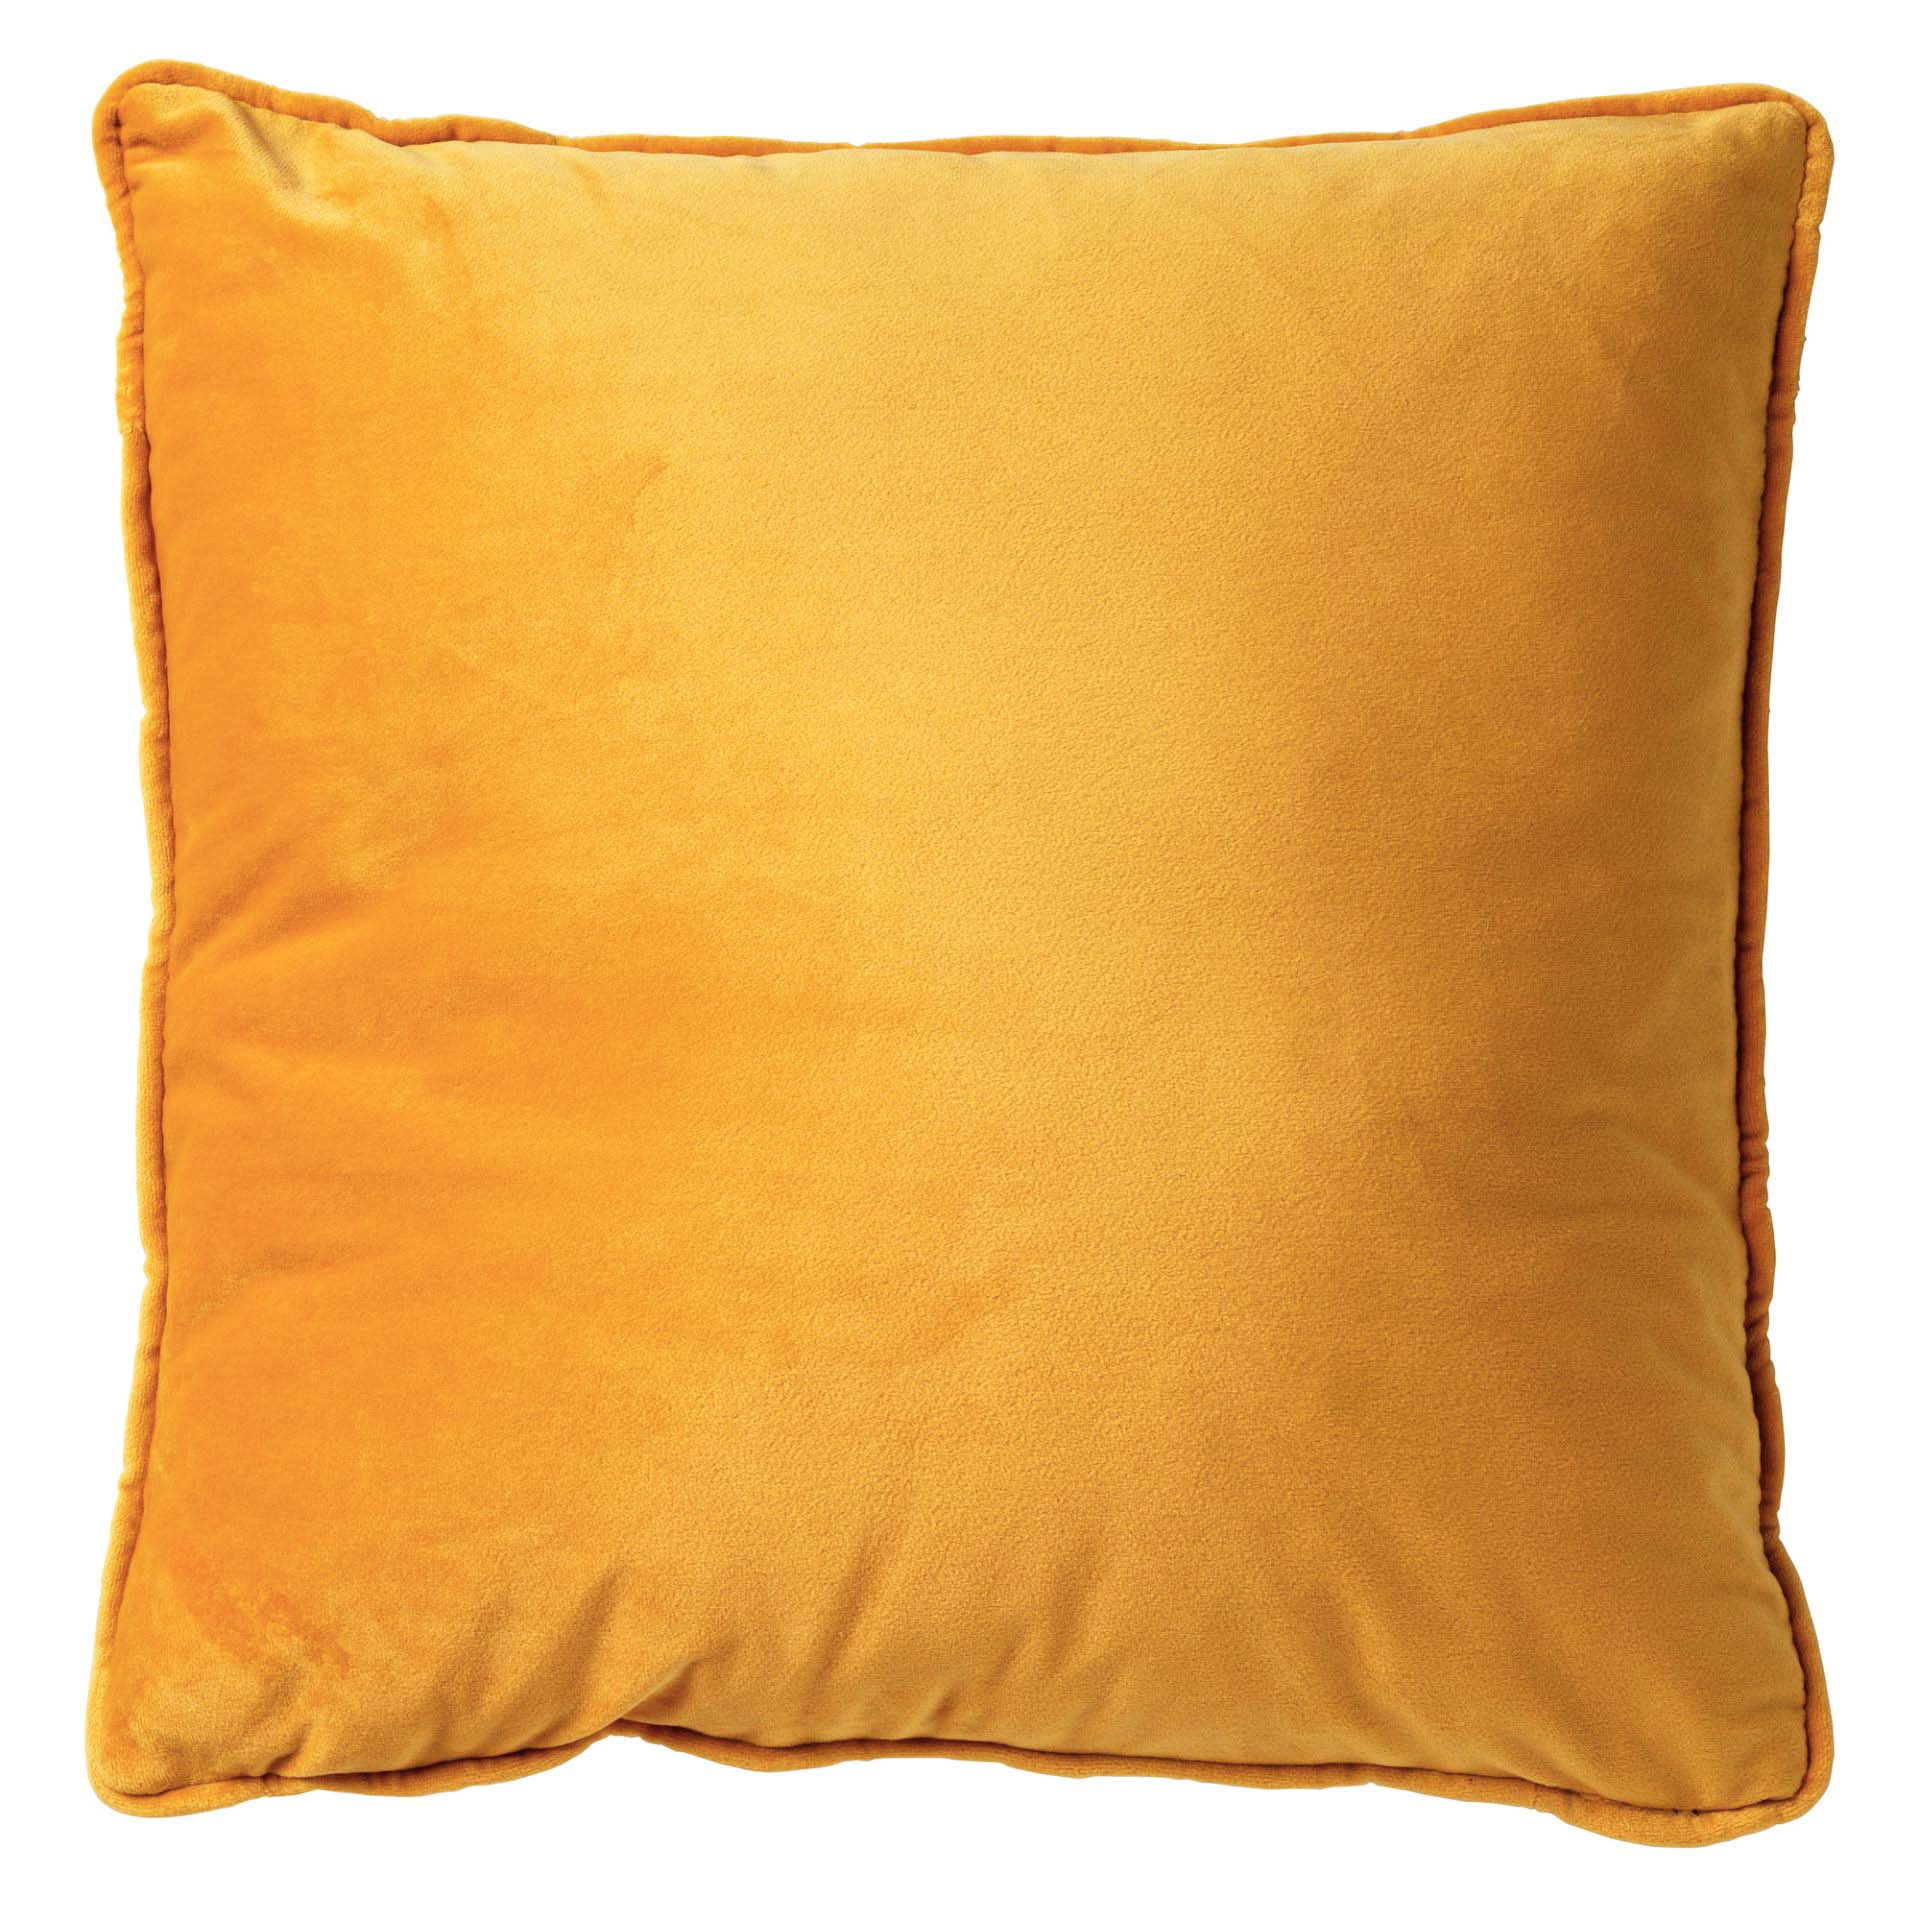 Finny cushion